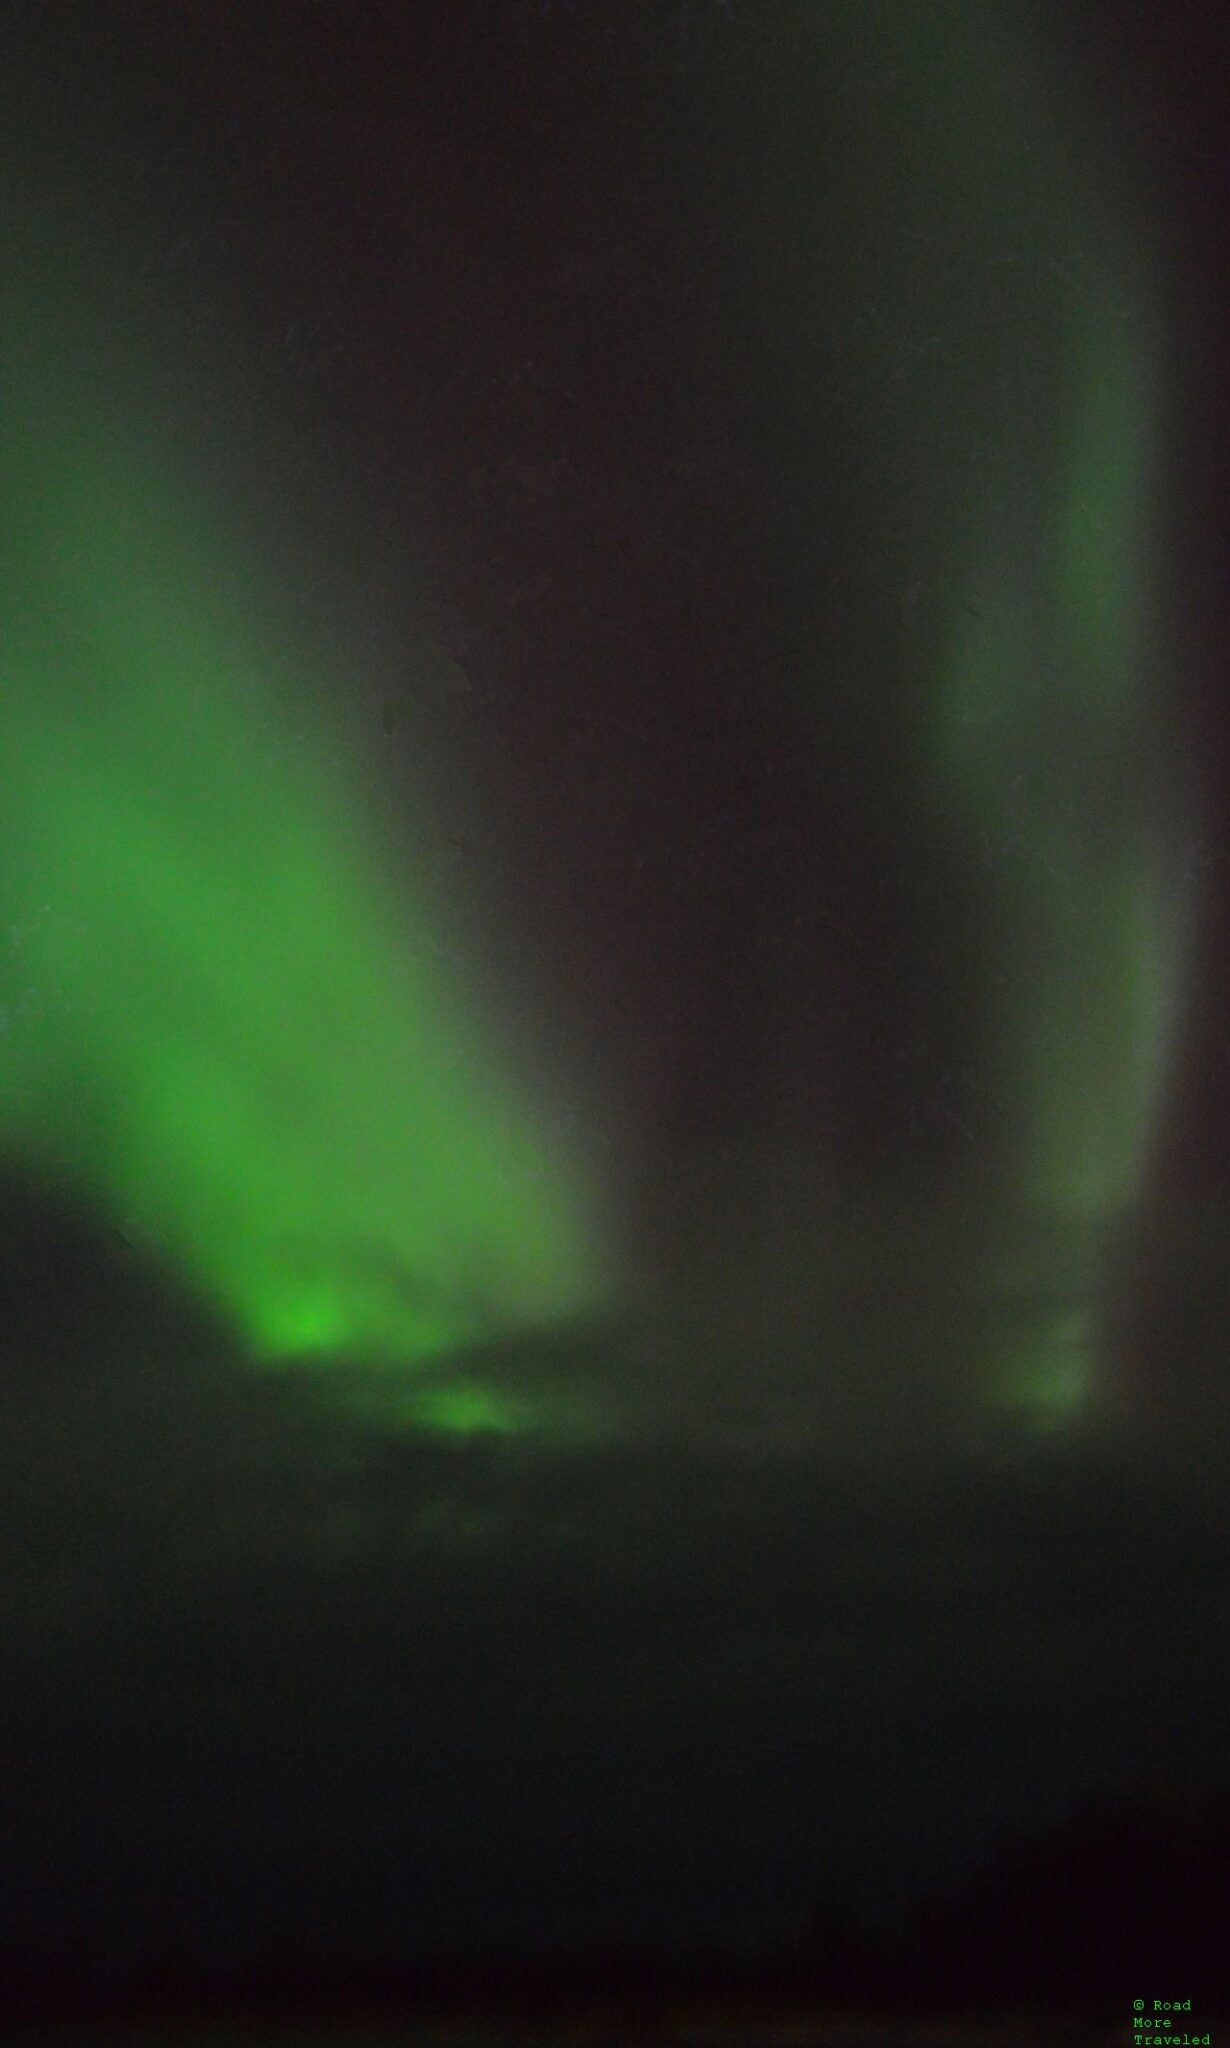 Aurora chasing in Finnish Lapland - start of aurora display